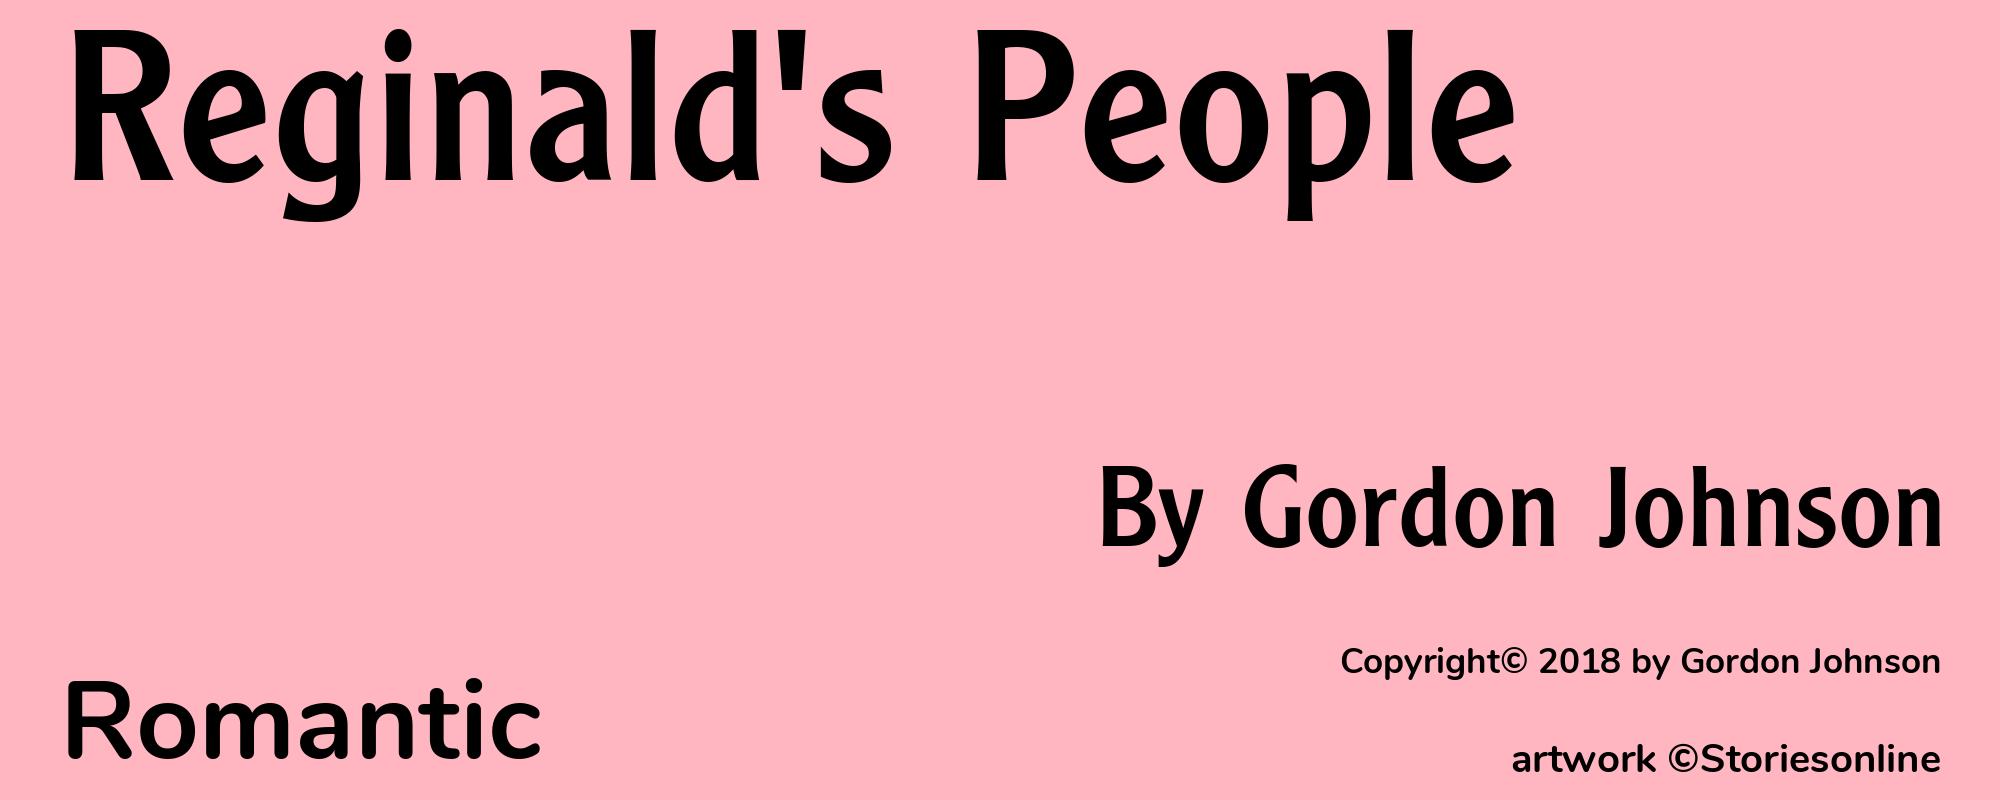 Reginald's People - Cover